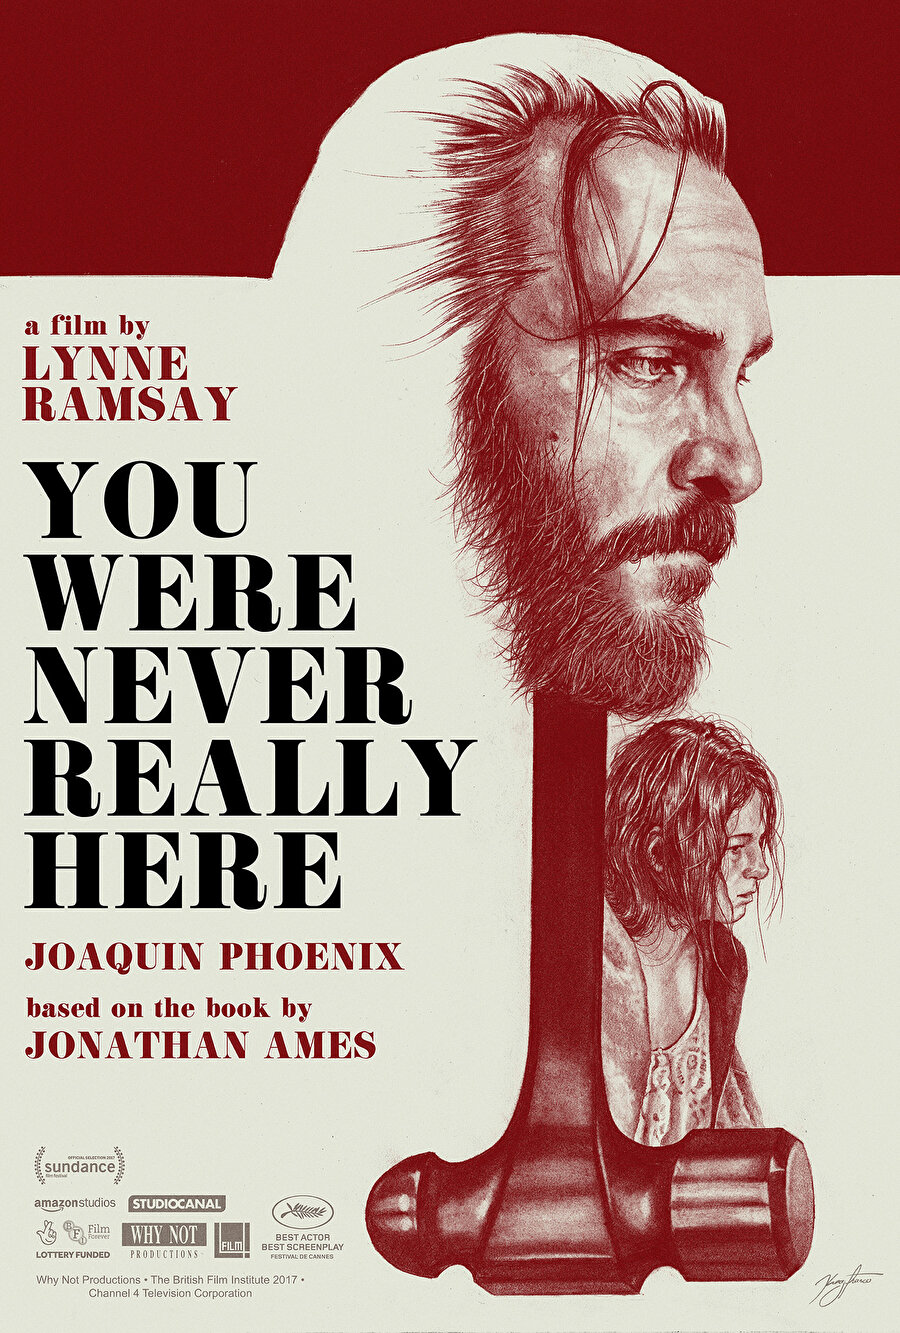 Jonathan Ames'in aynı adlı 2013 romanından uyarlanan filmin başrollerinde Joaquin Phoenix, Ekaterina Samsonov, Alex Manette, John Doman ve Judith Roberts yer alıyor.